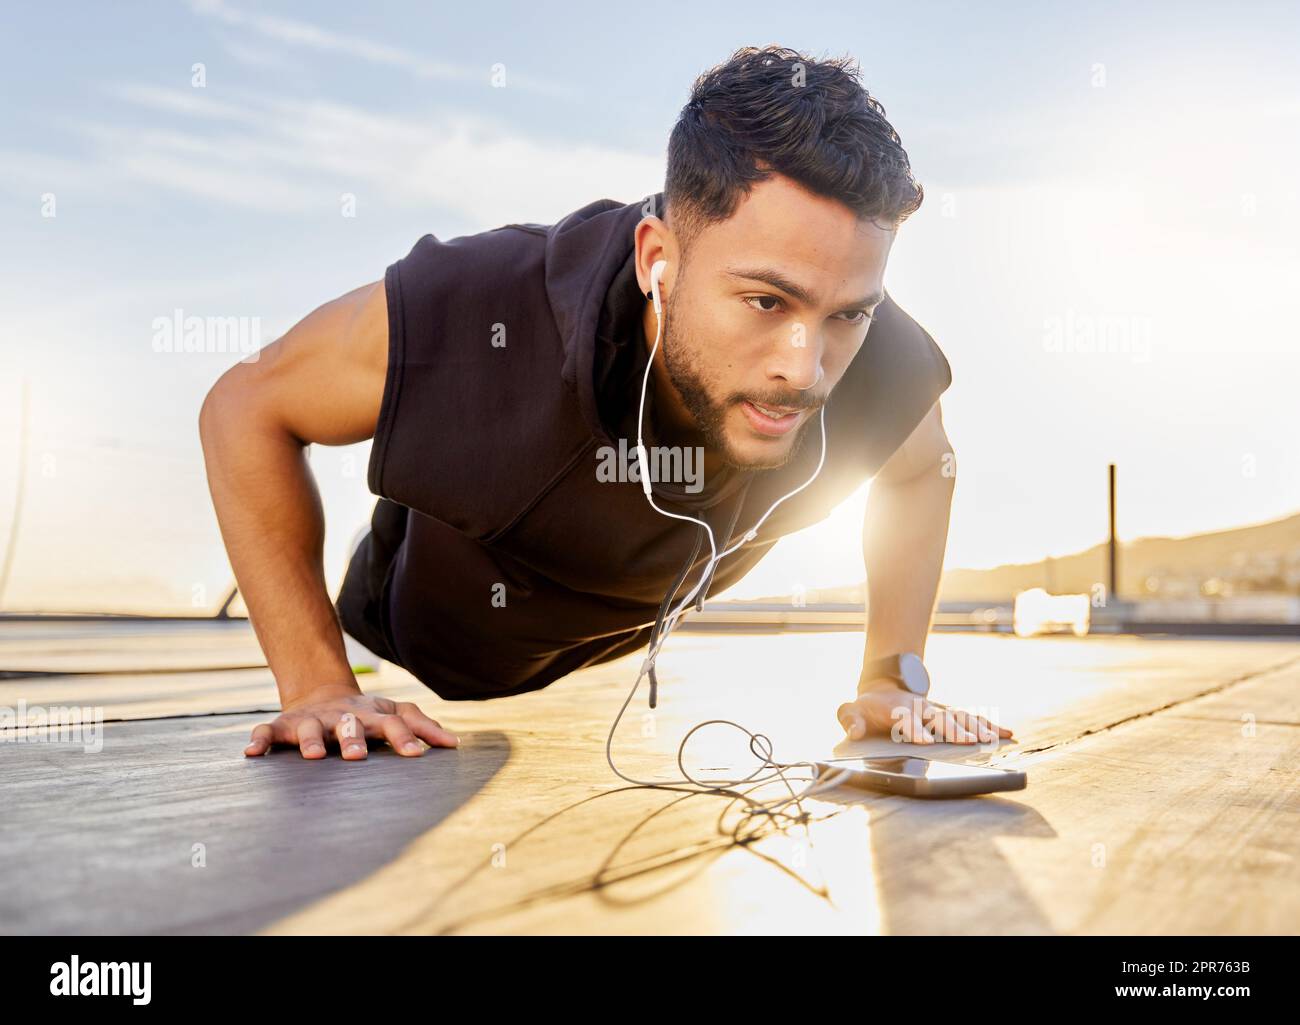 Spingi se vuoi raggiungere i tuoi obiettivi. Scatto di un giovane sportivo che indossa le cuffie mentre fai i push-up, su un tetto. Foto Stock